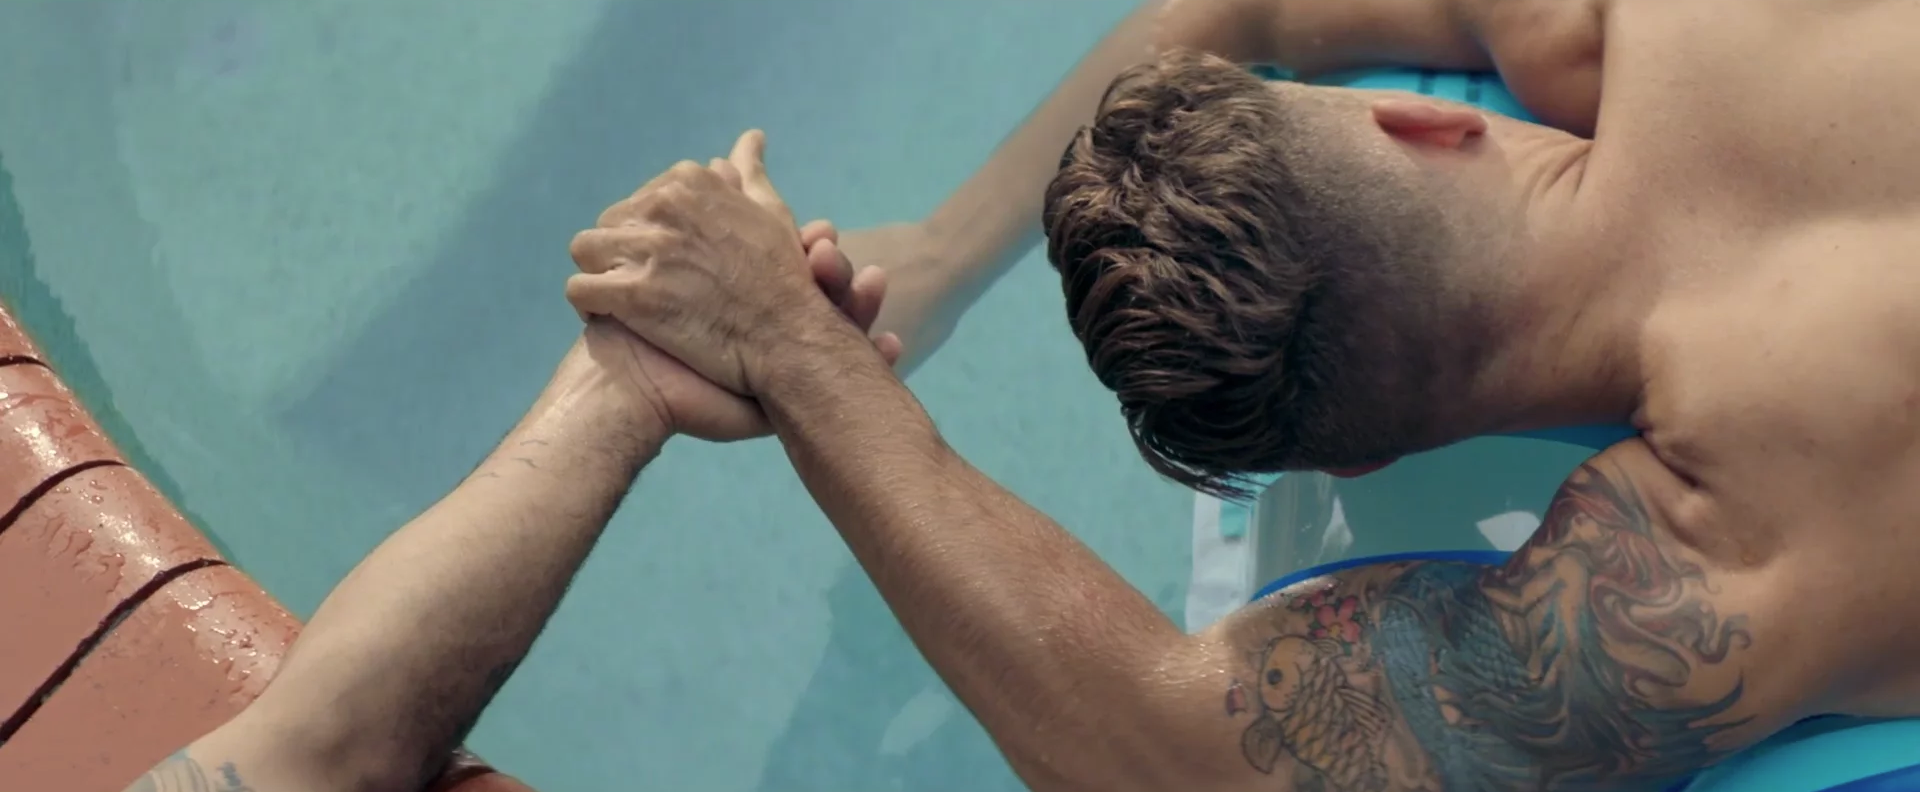 Este vídeo quiere que las parejas LGTB se cojan de la mano contra la homofobia